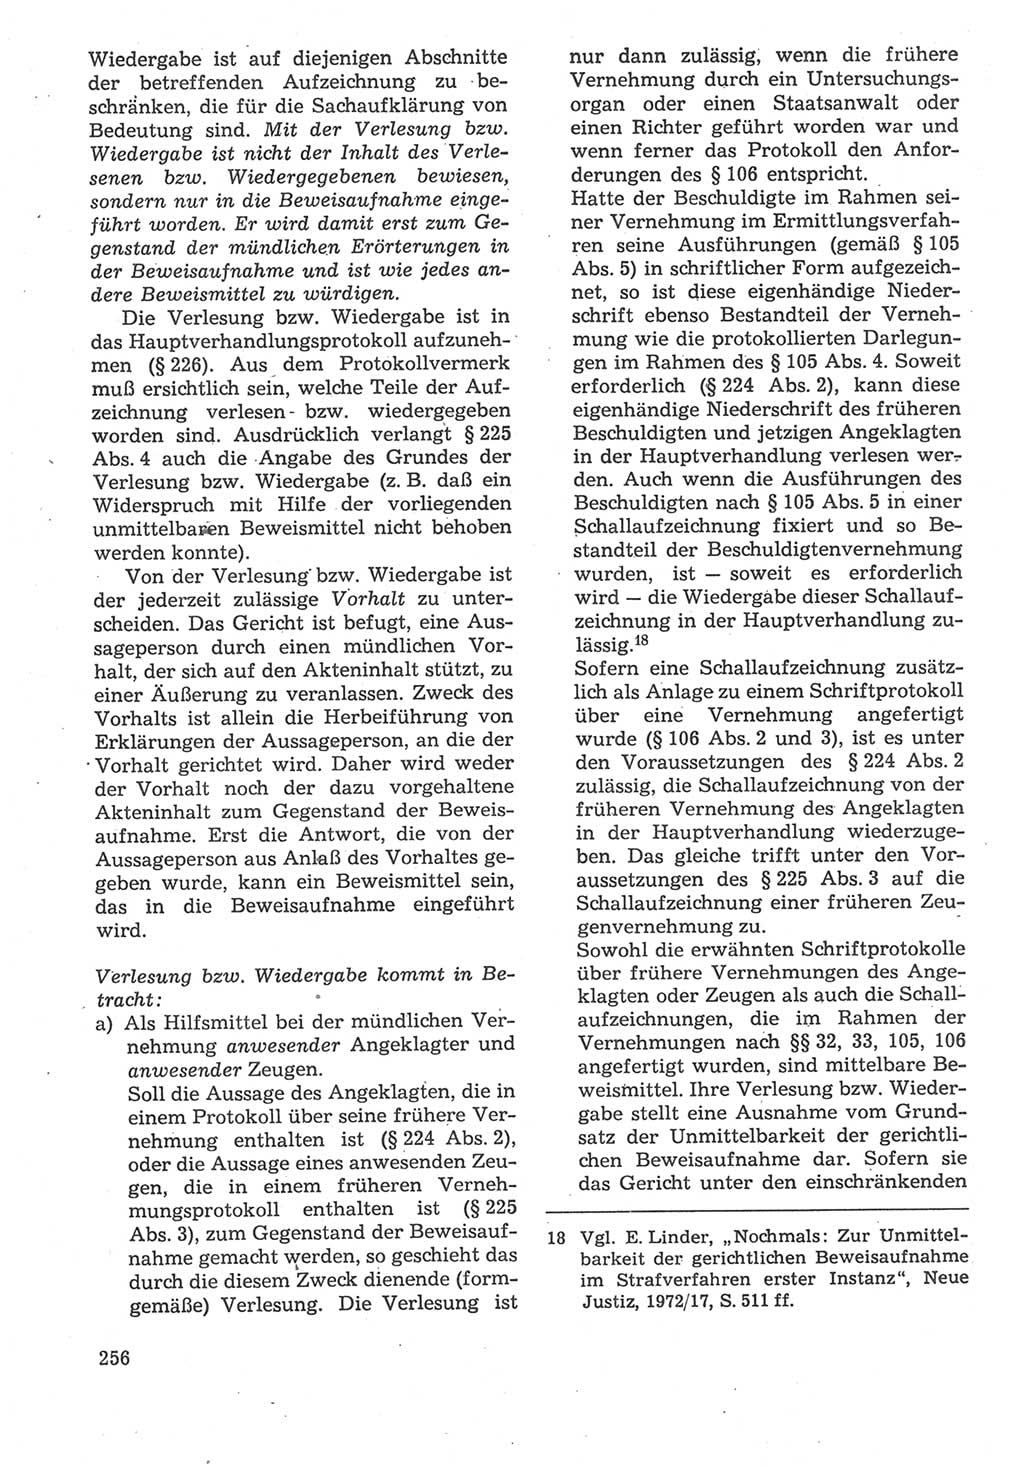 Strafverfahrensrecht [Deutsche Demokratische Republik (DDR)], Lehrbuch 1987, Seite 256 (Strafverf.-R. DDR Lb. 1987, S. 256)